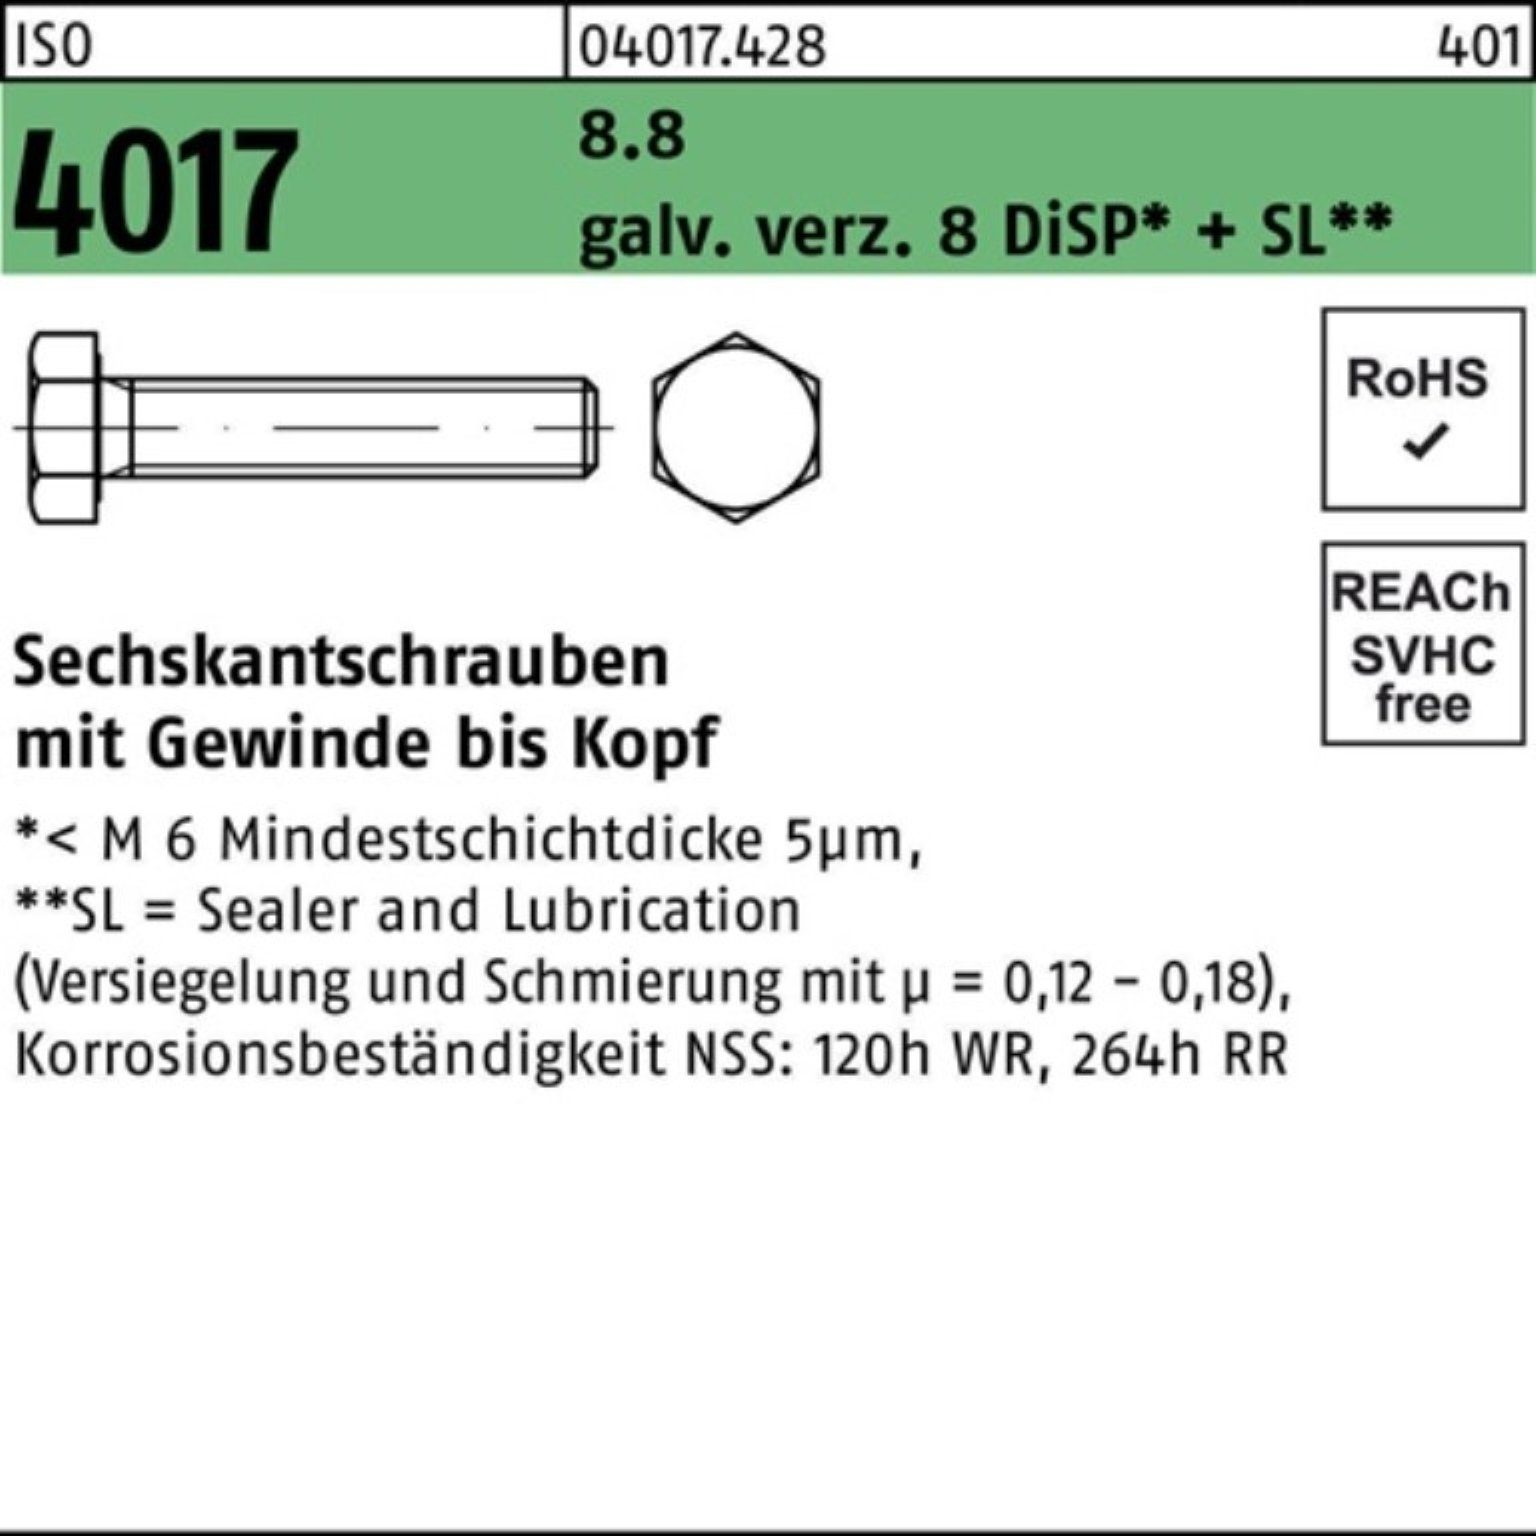 galv.verz. 80 Sechskantschraube M8x 200er 8.8 Pack 4017 Sechskantschraube 8 Bufab DiSP+ ISO VG